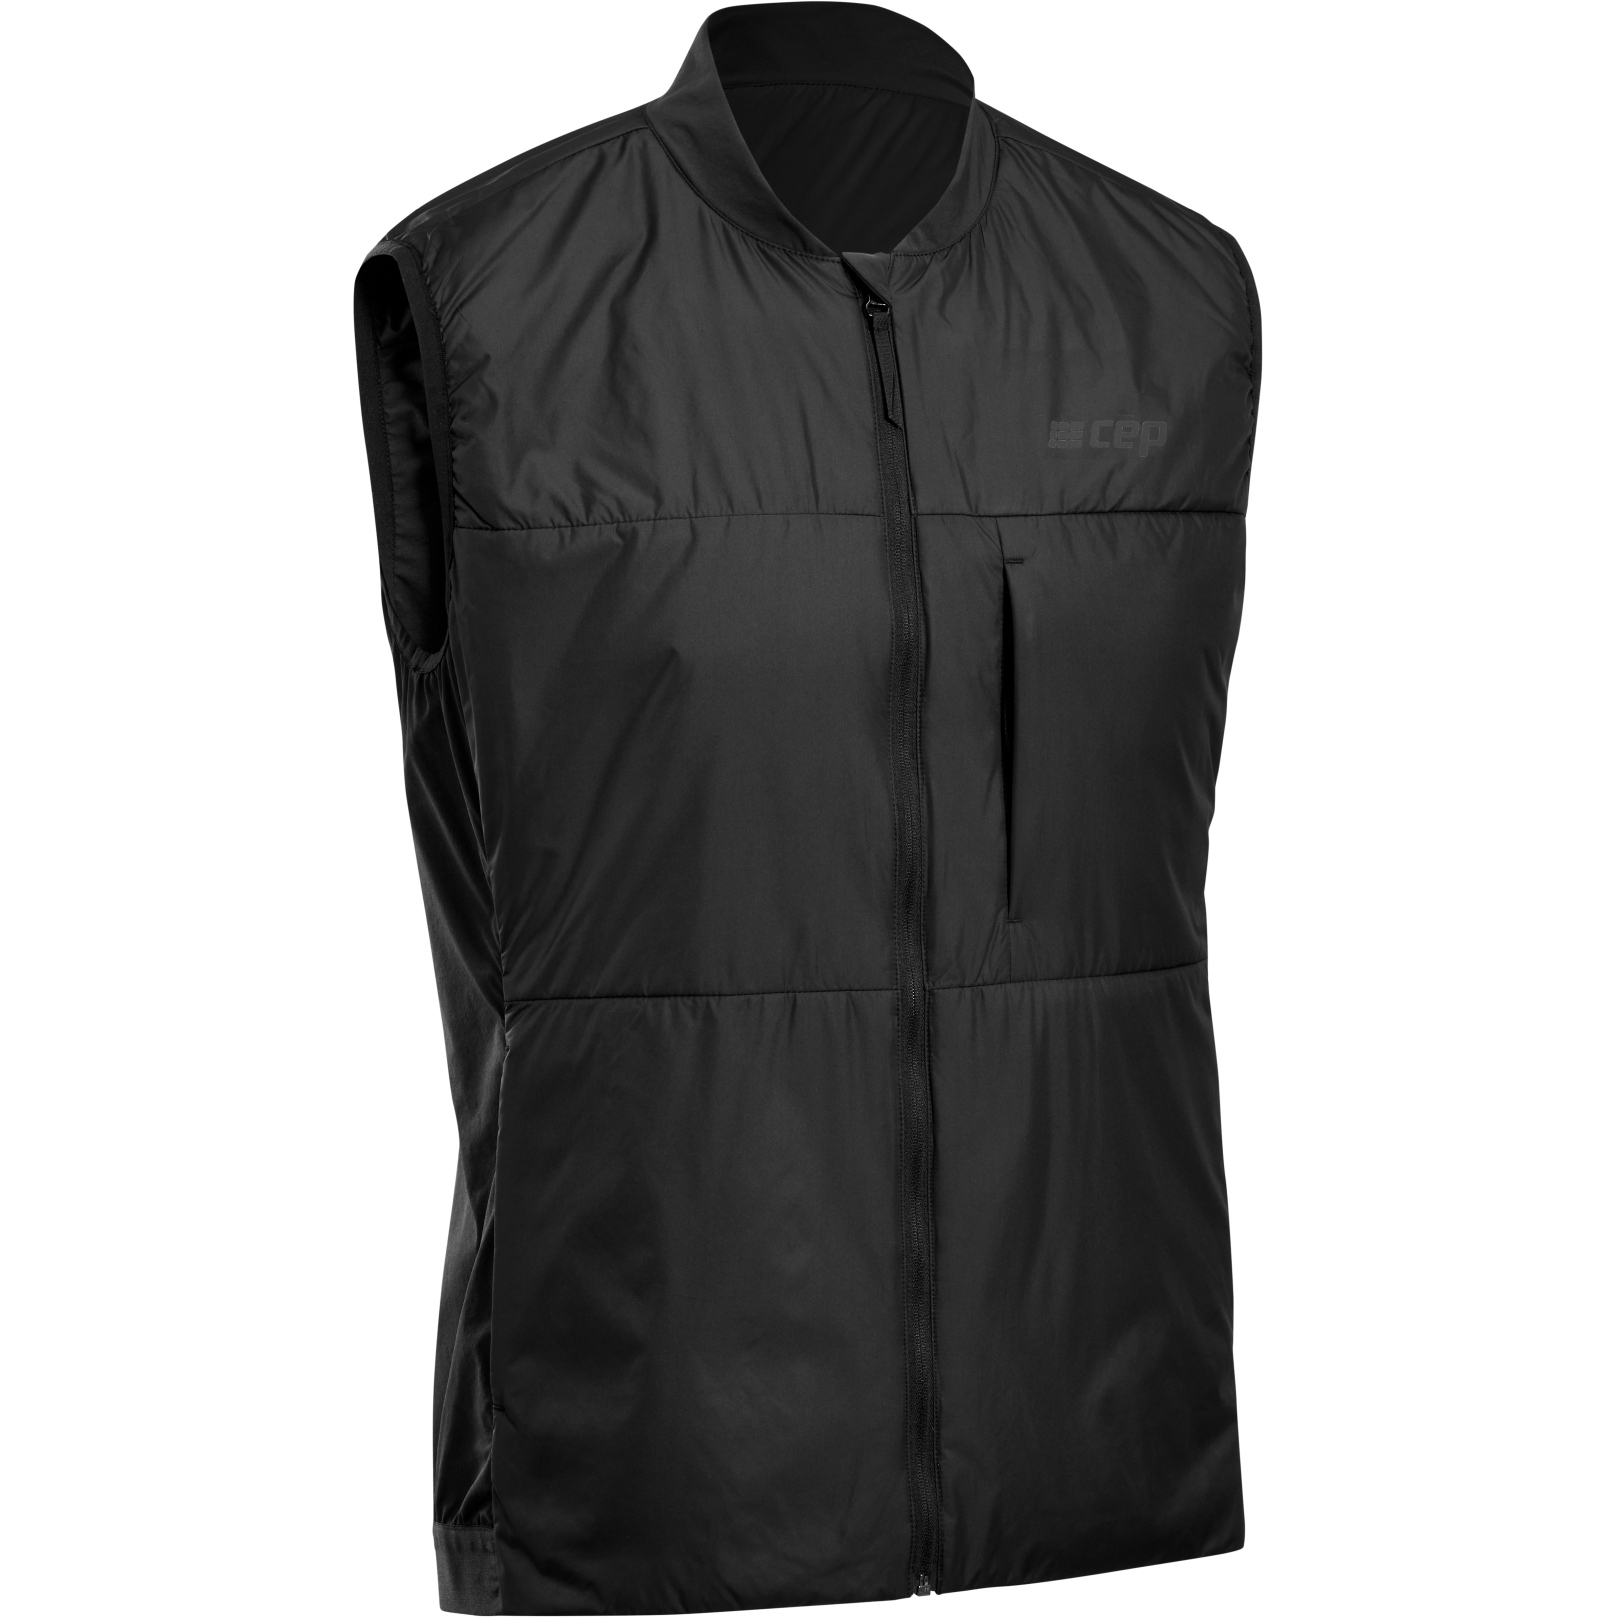 Productfoto van CEP Cold Weather Vest - zwart